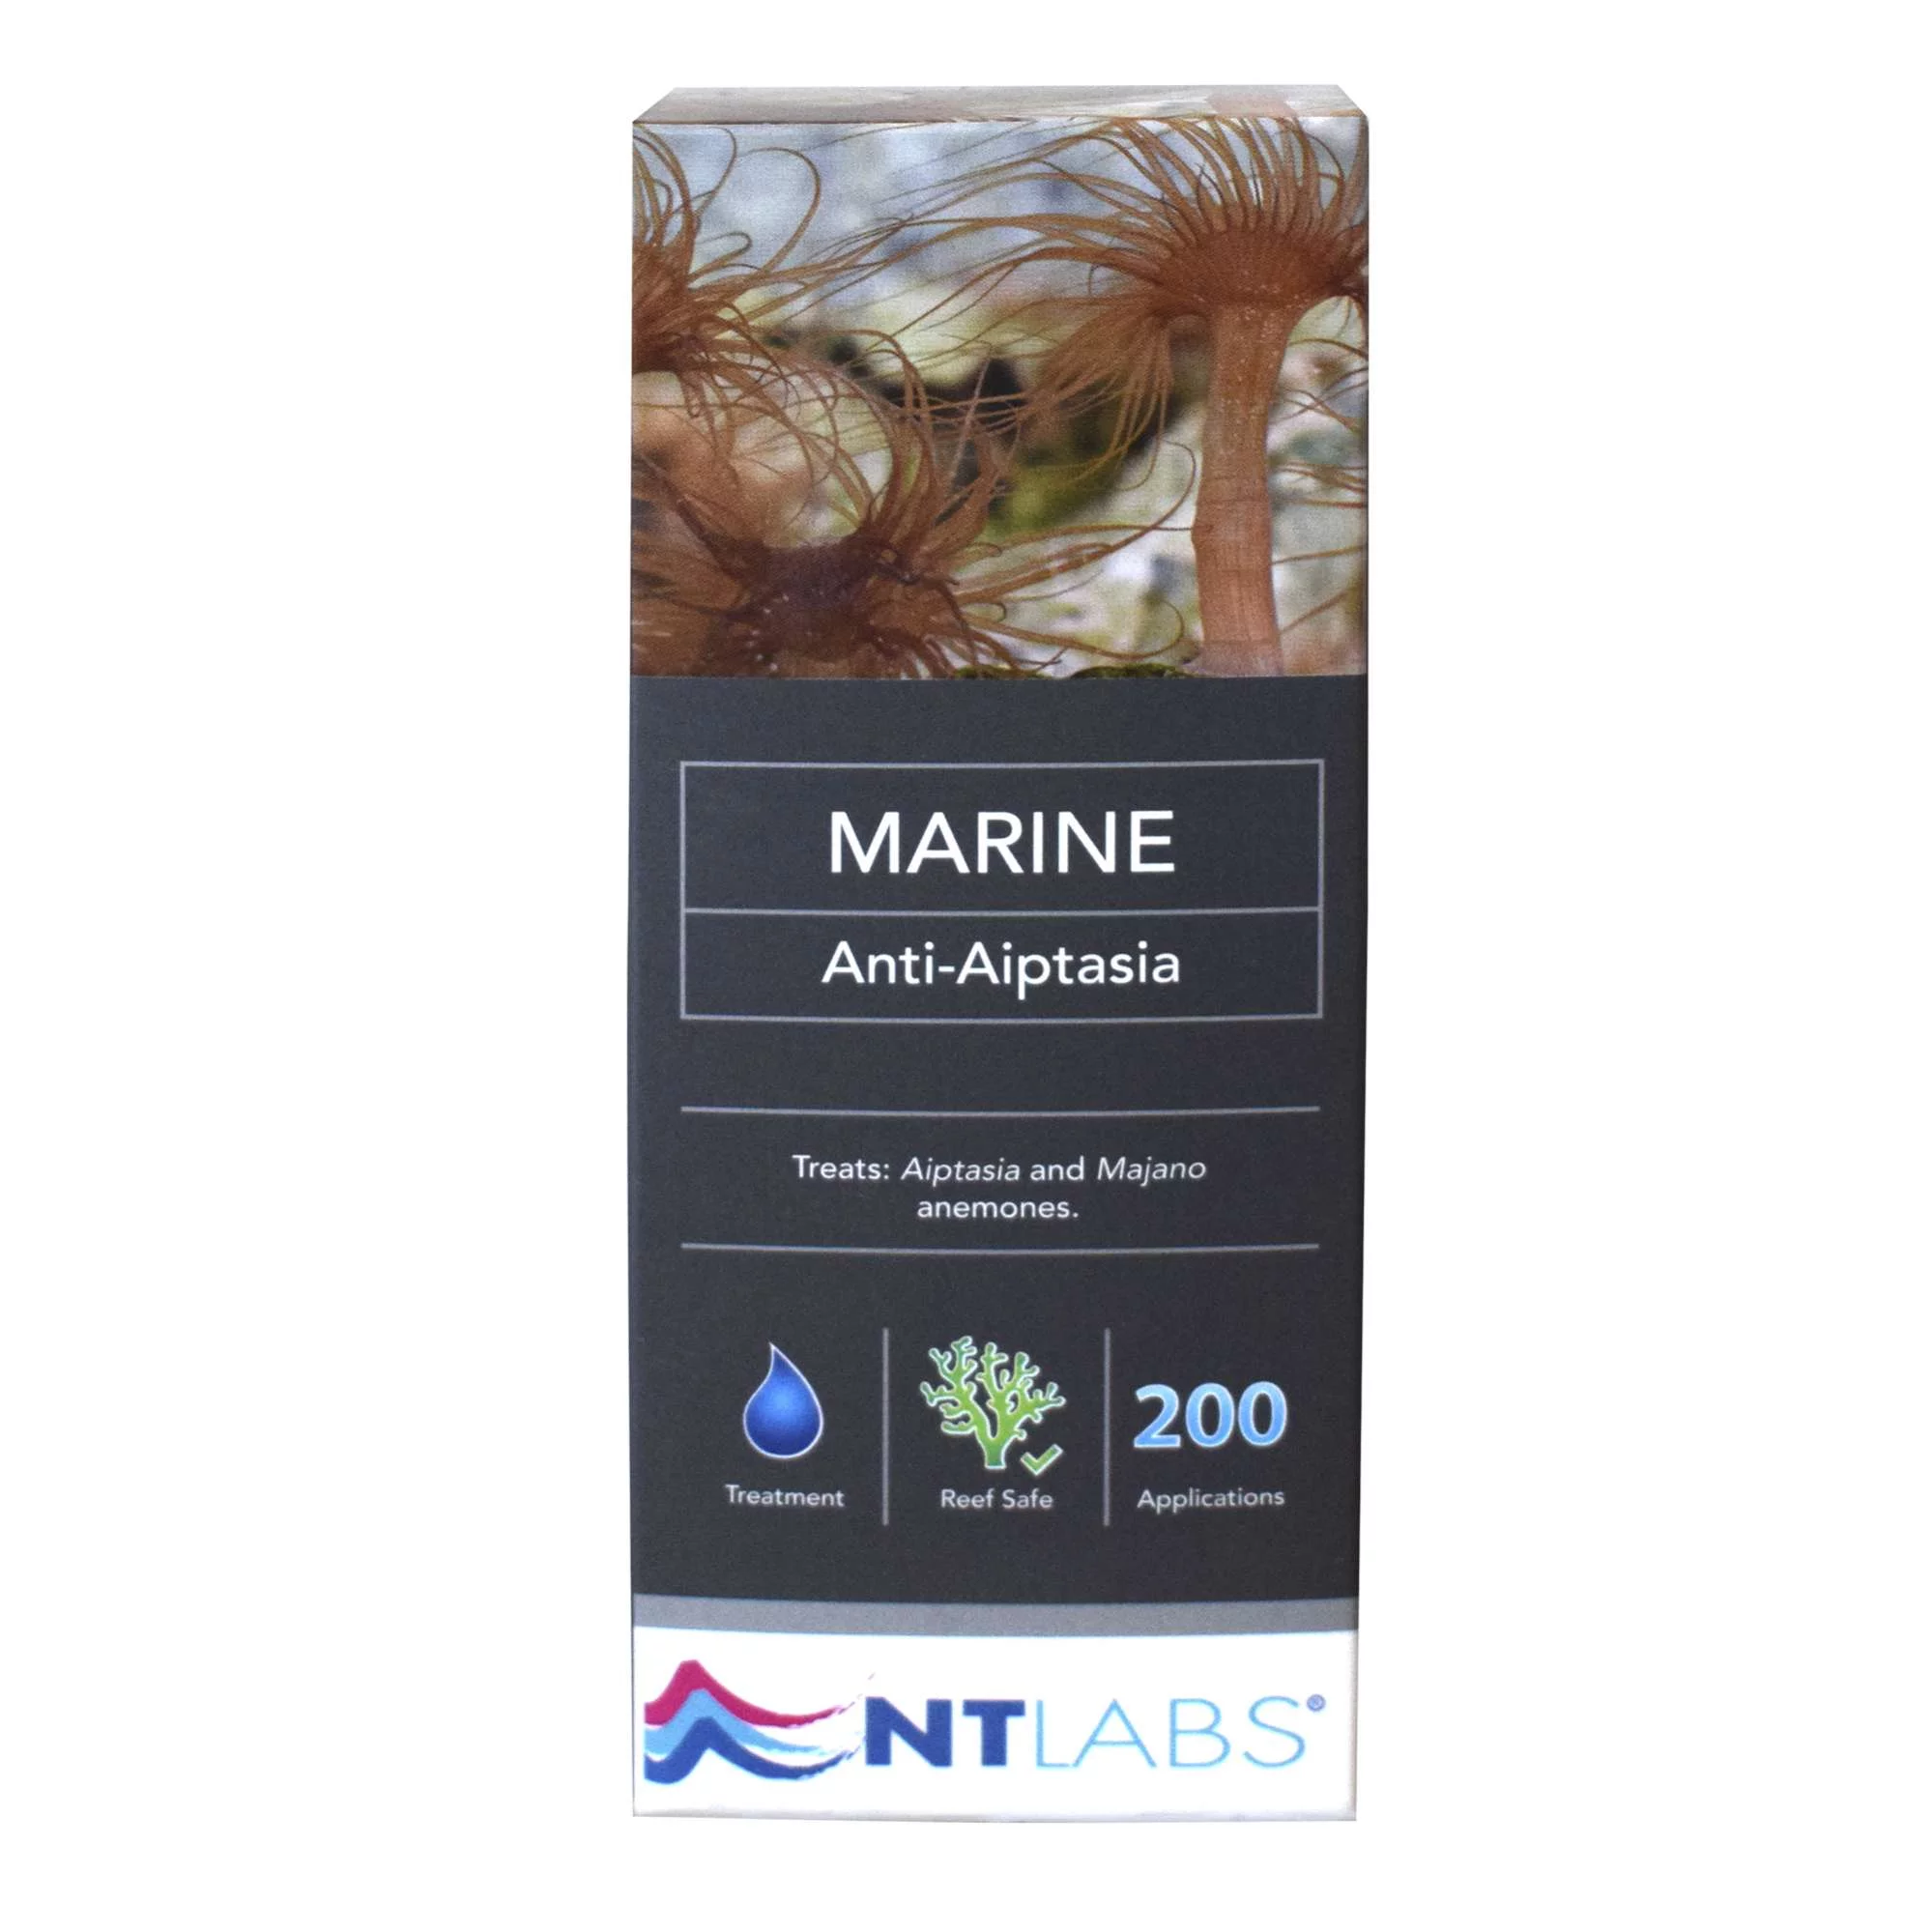 nt550-marine-anti-aiptasias-de-ntlabs_general_8851.jpg